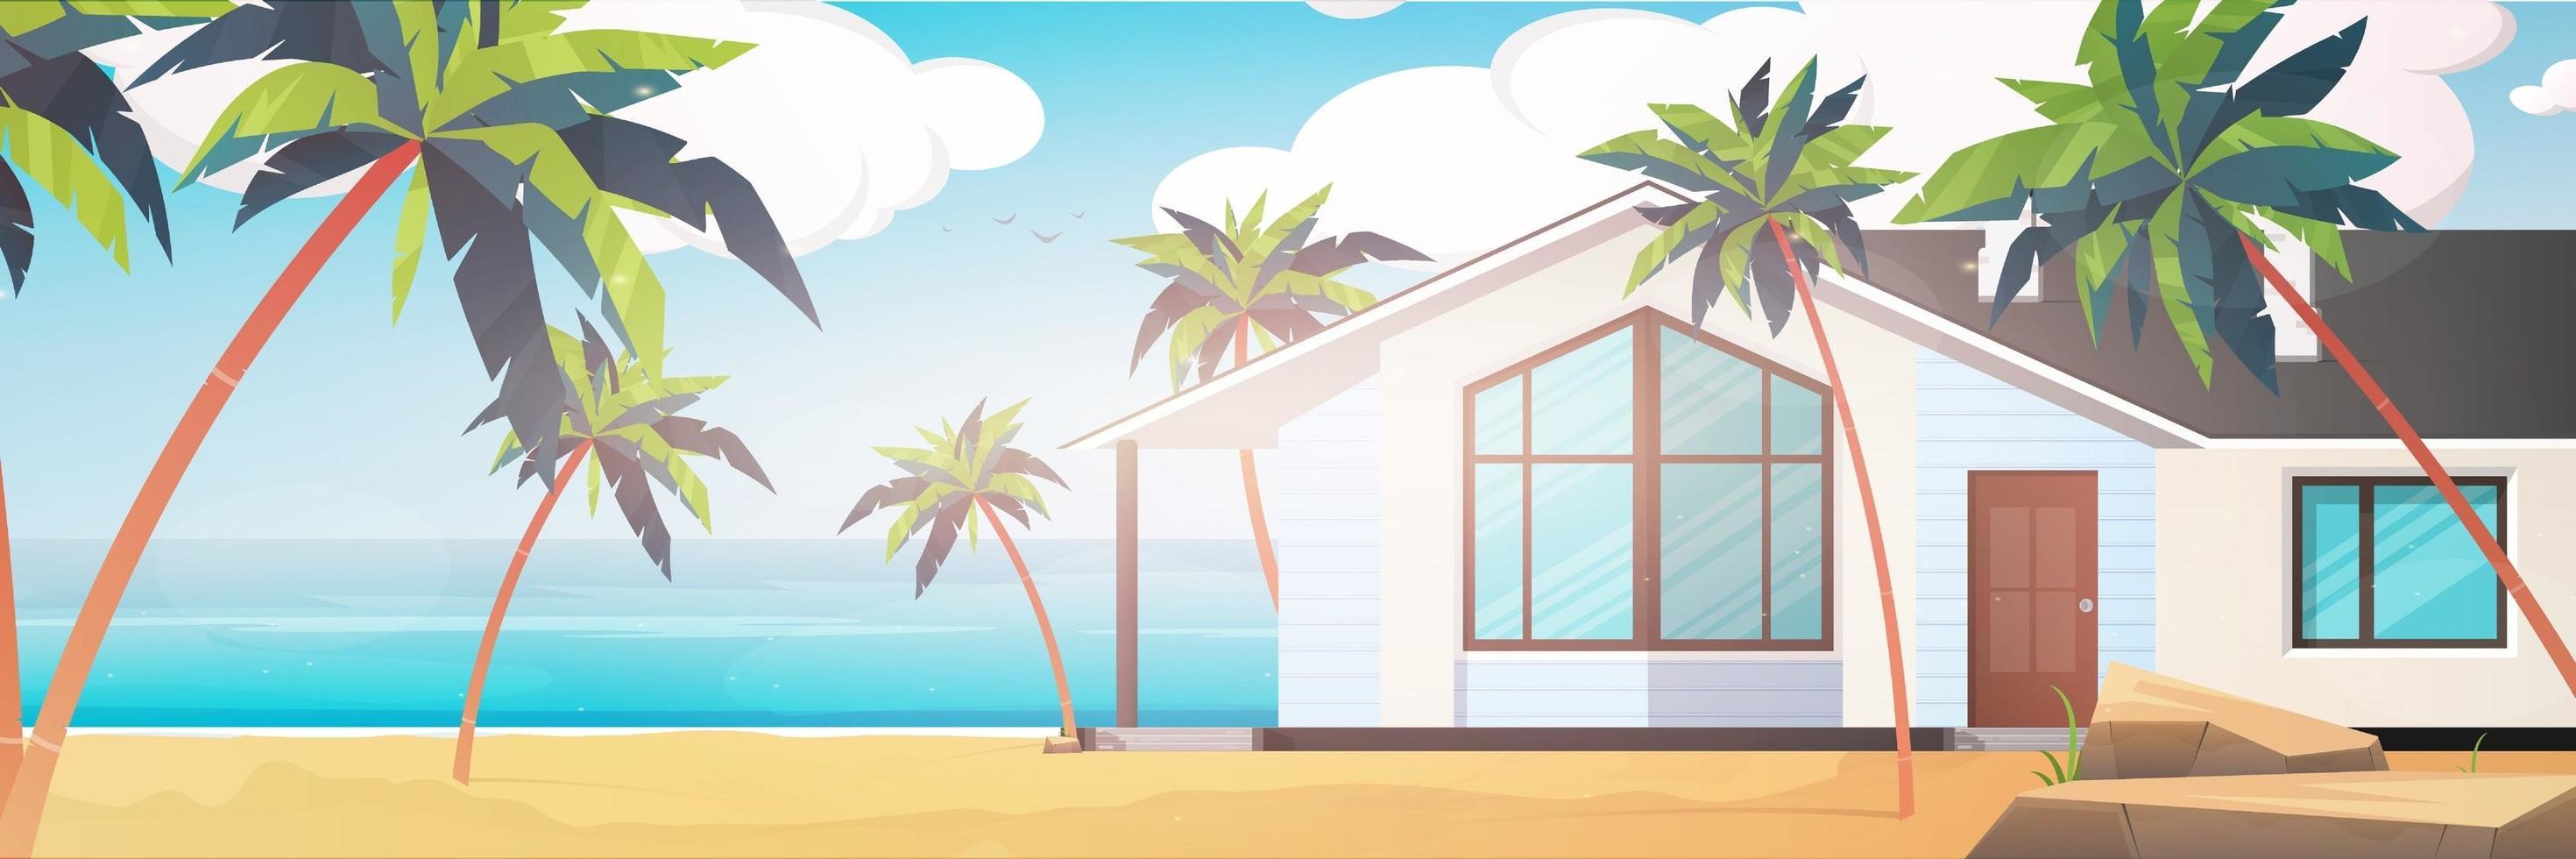 een hotel aan een blauwe, schone en kalme zee. villa aan een zandstrand met palmbomen. zomervakantie concept. vectorillustratie. vector